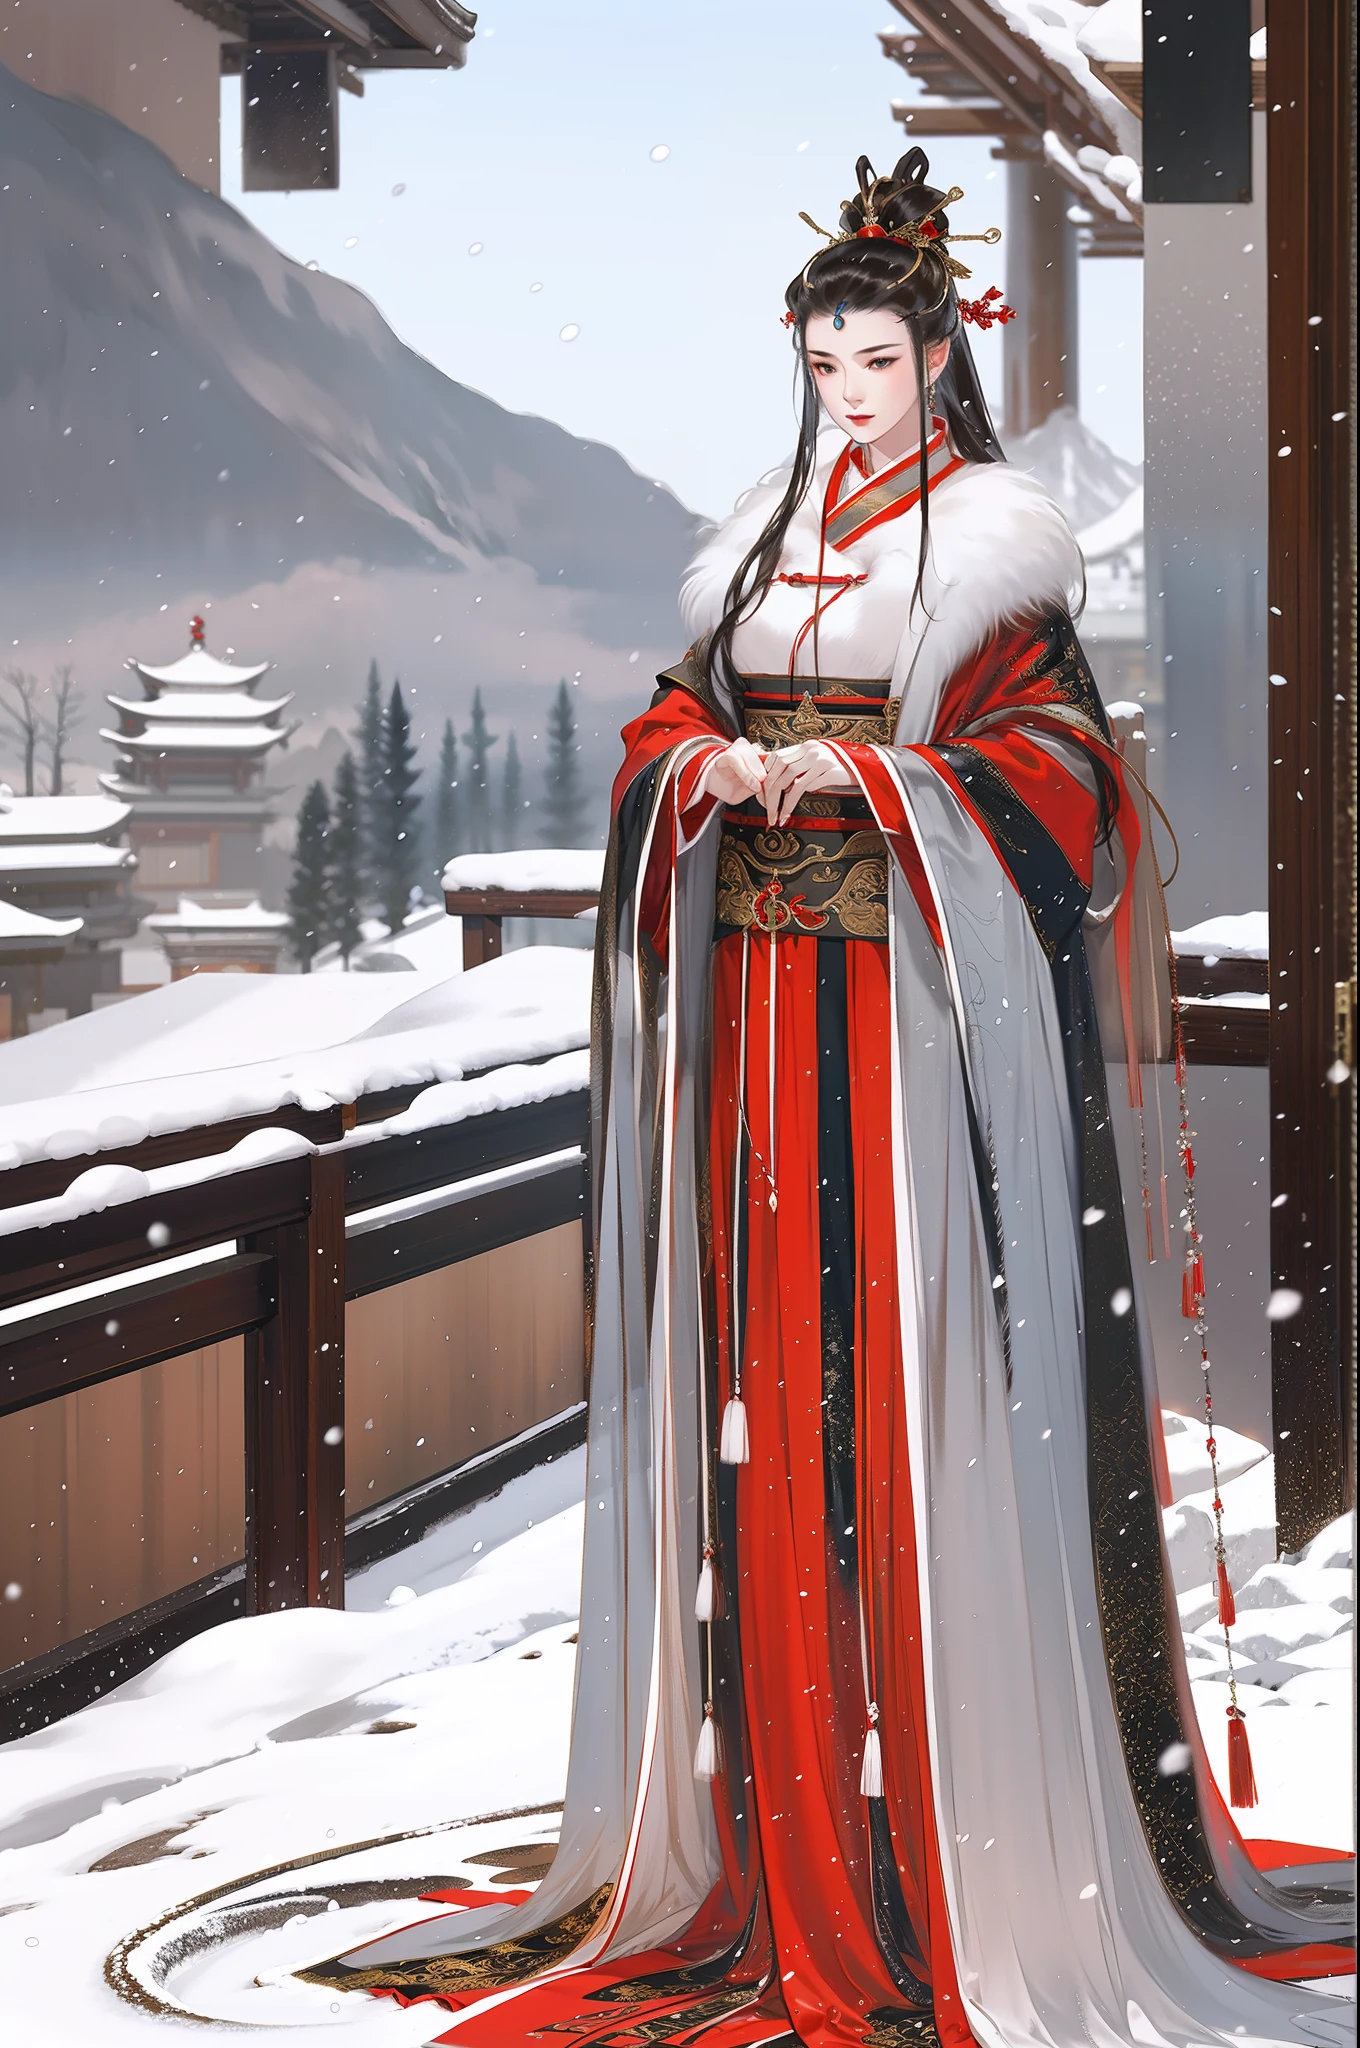 中國古代美女, 全身, 站在窗邊, 氣質端莊, 飄逸的紅色長裙, 毛茸茸的斗篷, 清晰的臉, 憂鬱的眼神, 暴雪, 電影邊緣光, 細膩的光線, 傑作, 史詩作品, 超高清, 最好的品質, 32k